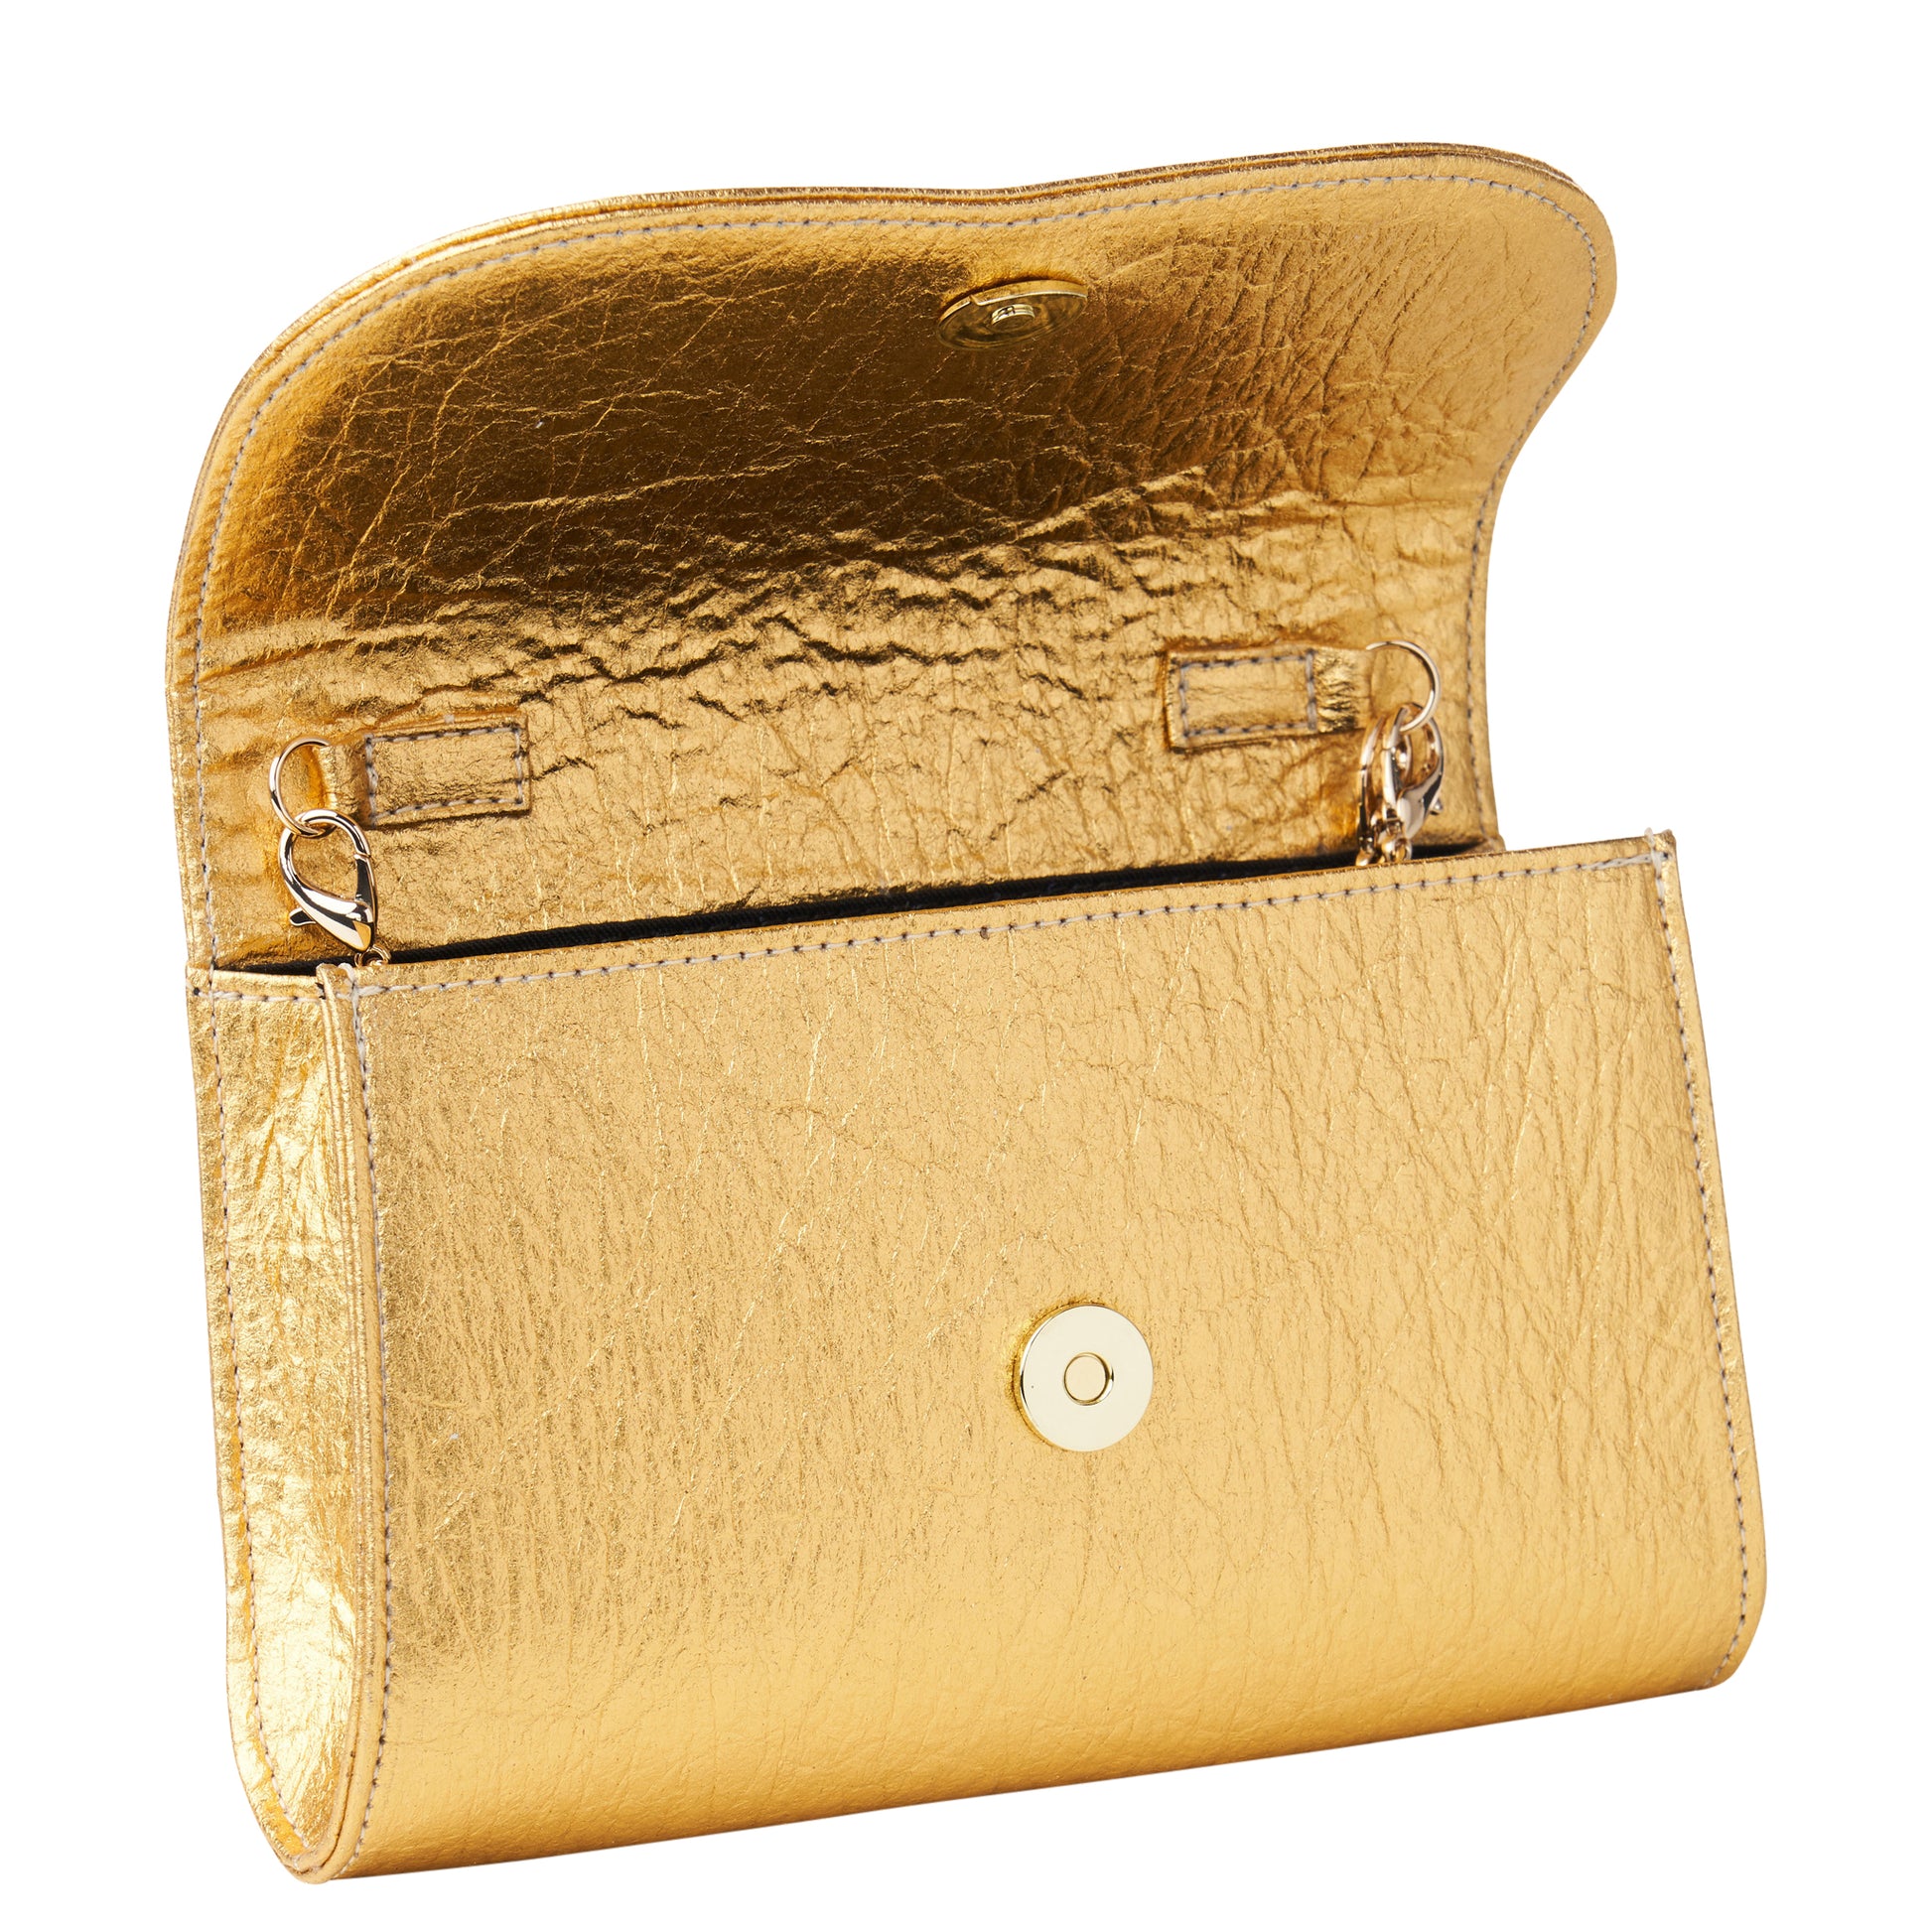 Gold Potli Bag | Gold and Sliver Beaded Studded Clutch | Party Clutch Sling  | Wedding Purse in Gold | Handmade Embellished Lotus Potli Bag – Kaash